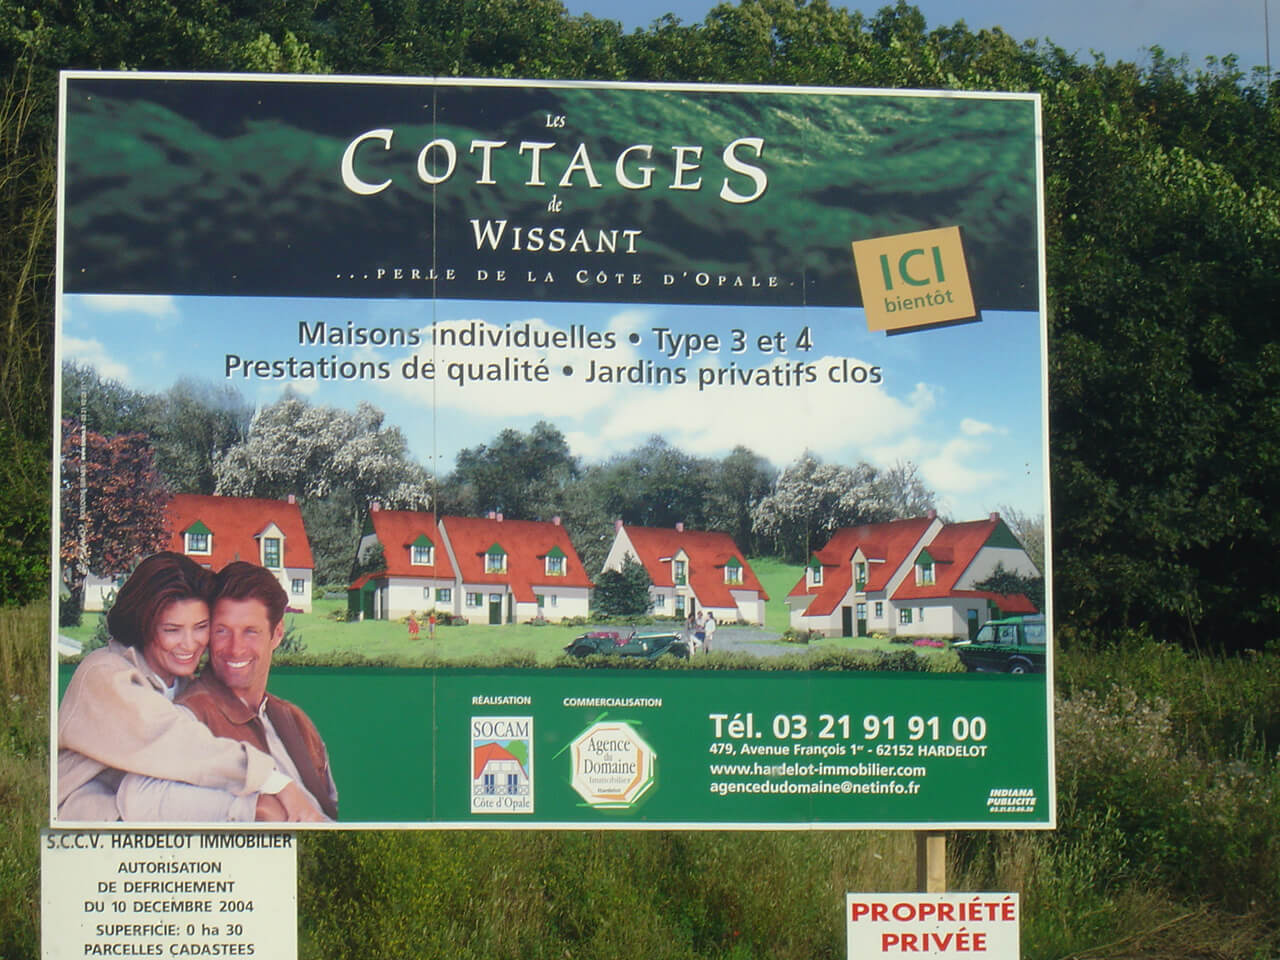 Panneau publicitaire Les Cottages de Wissant